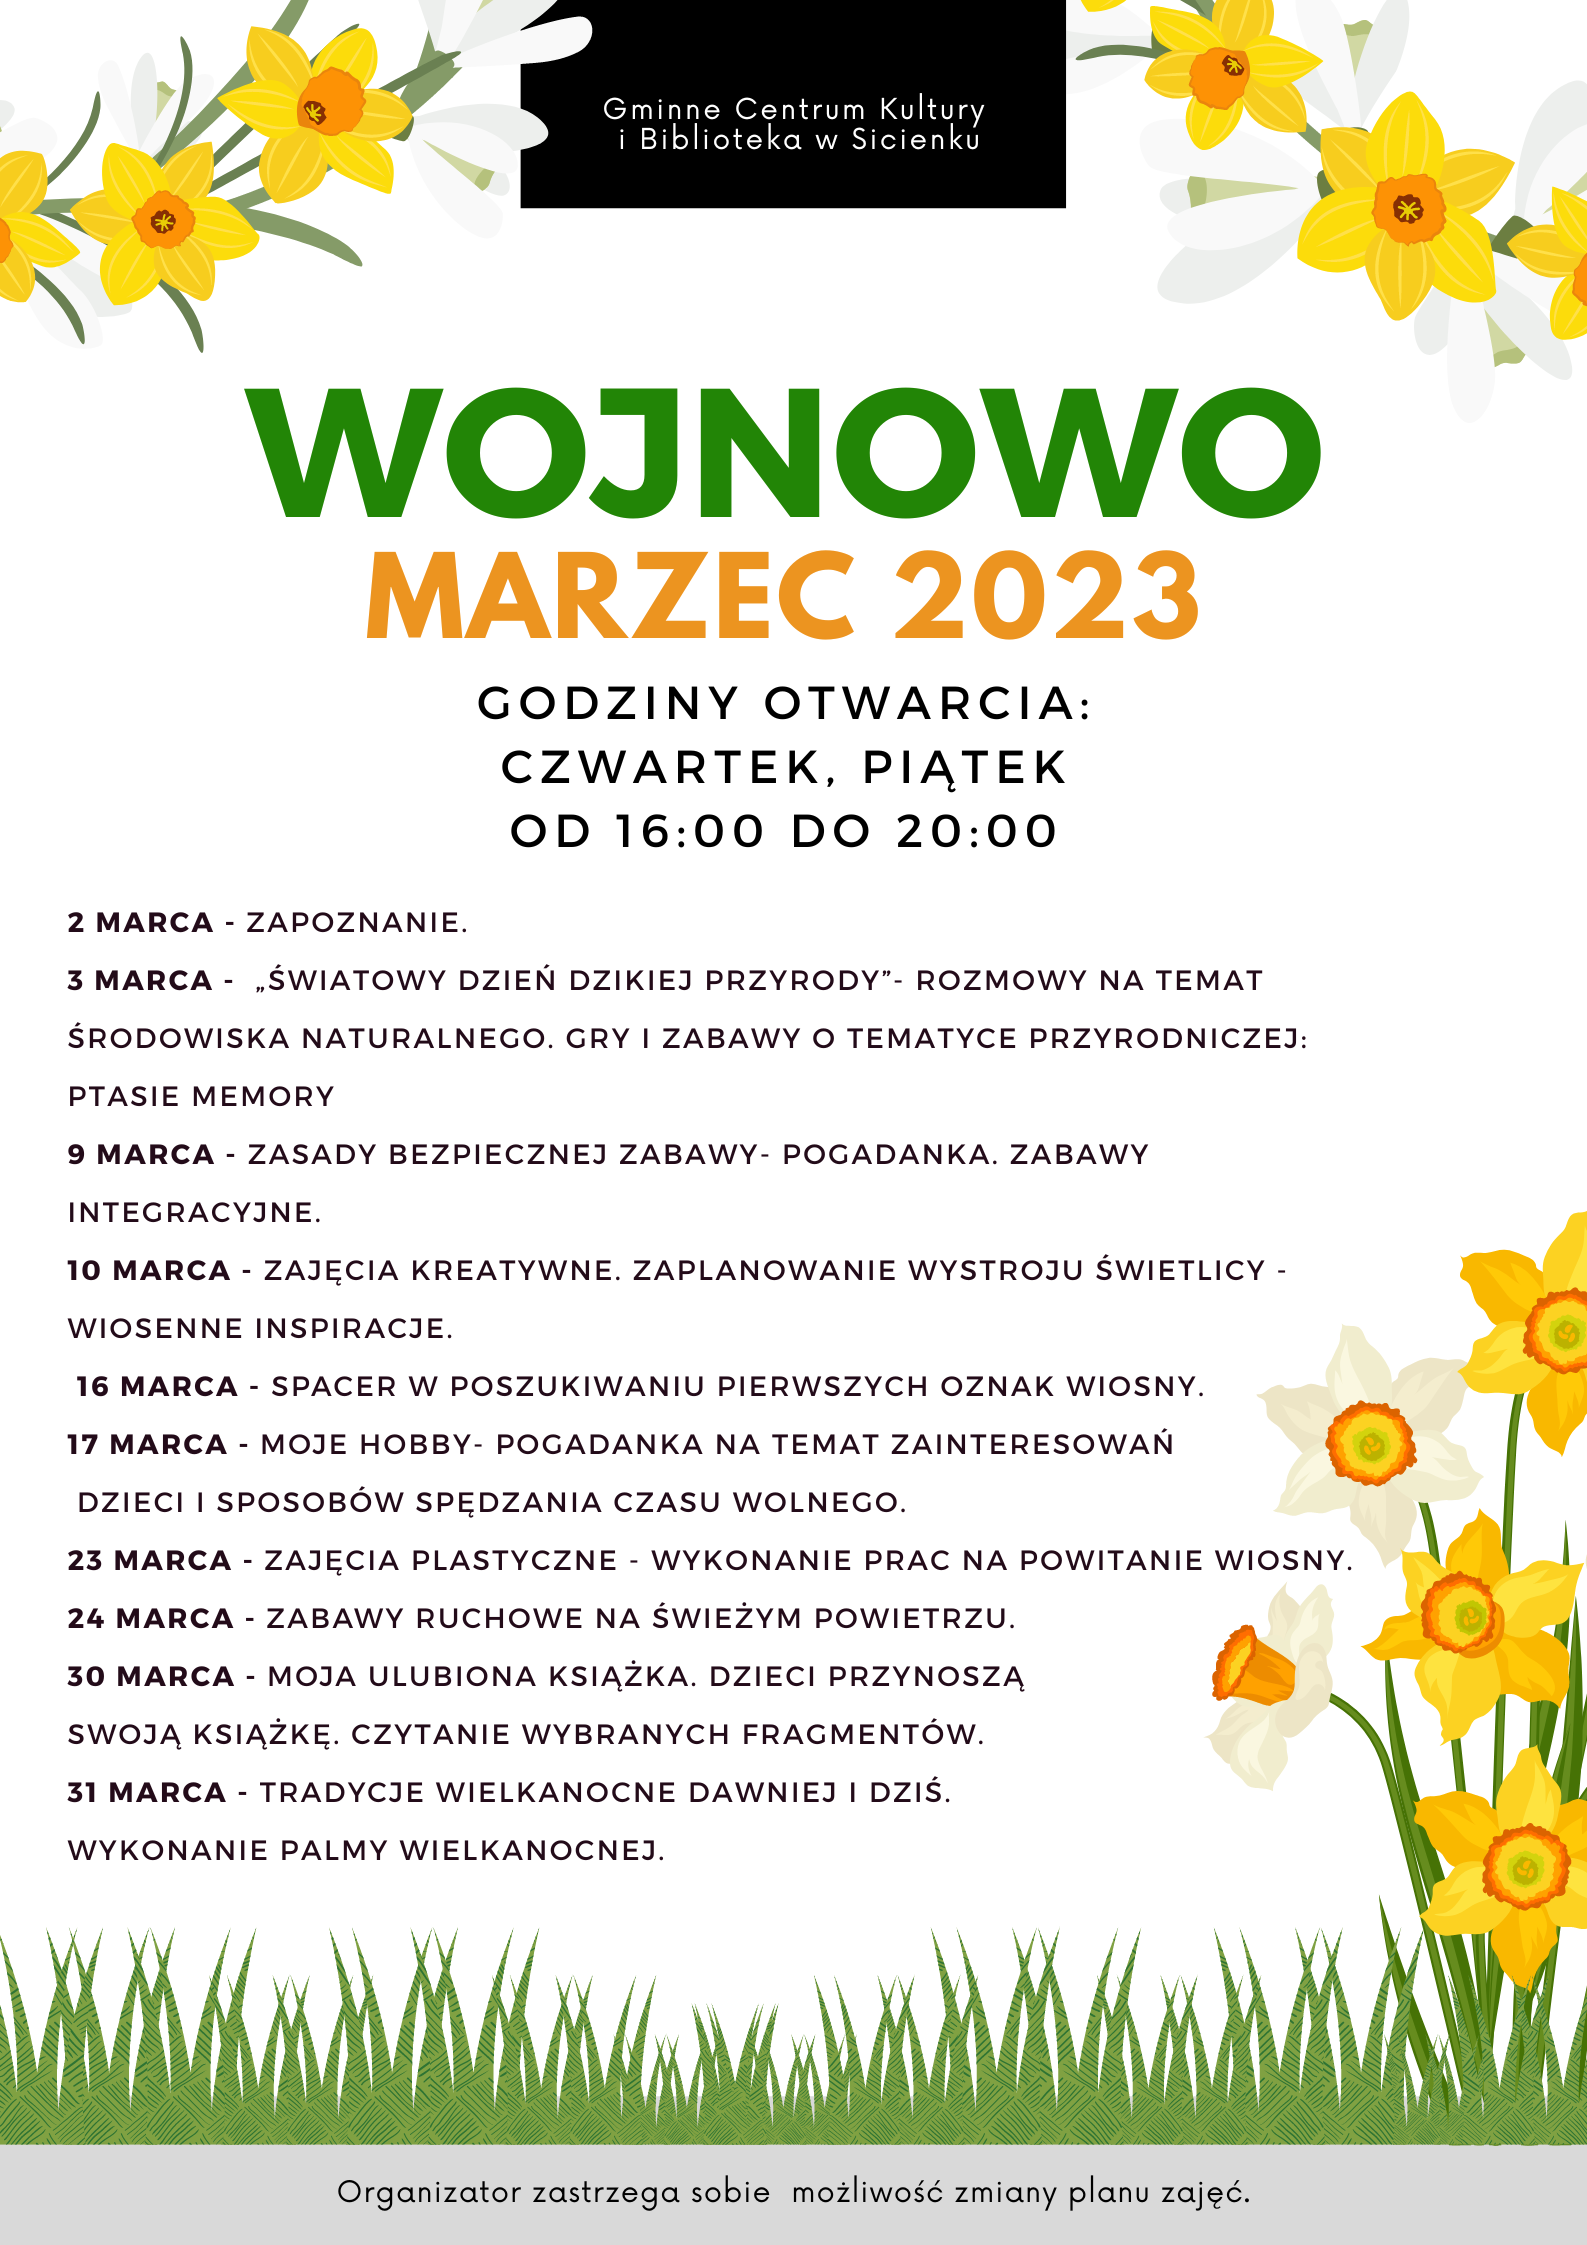 Plan pracy - marzec 2023 Wojnowo